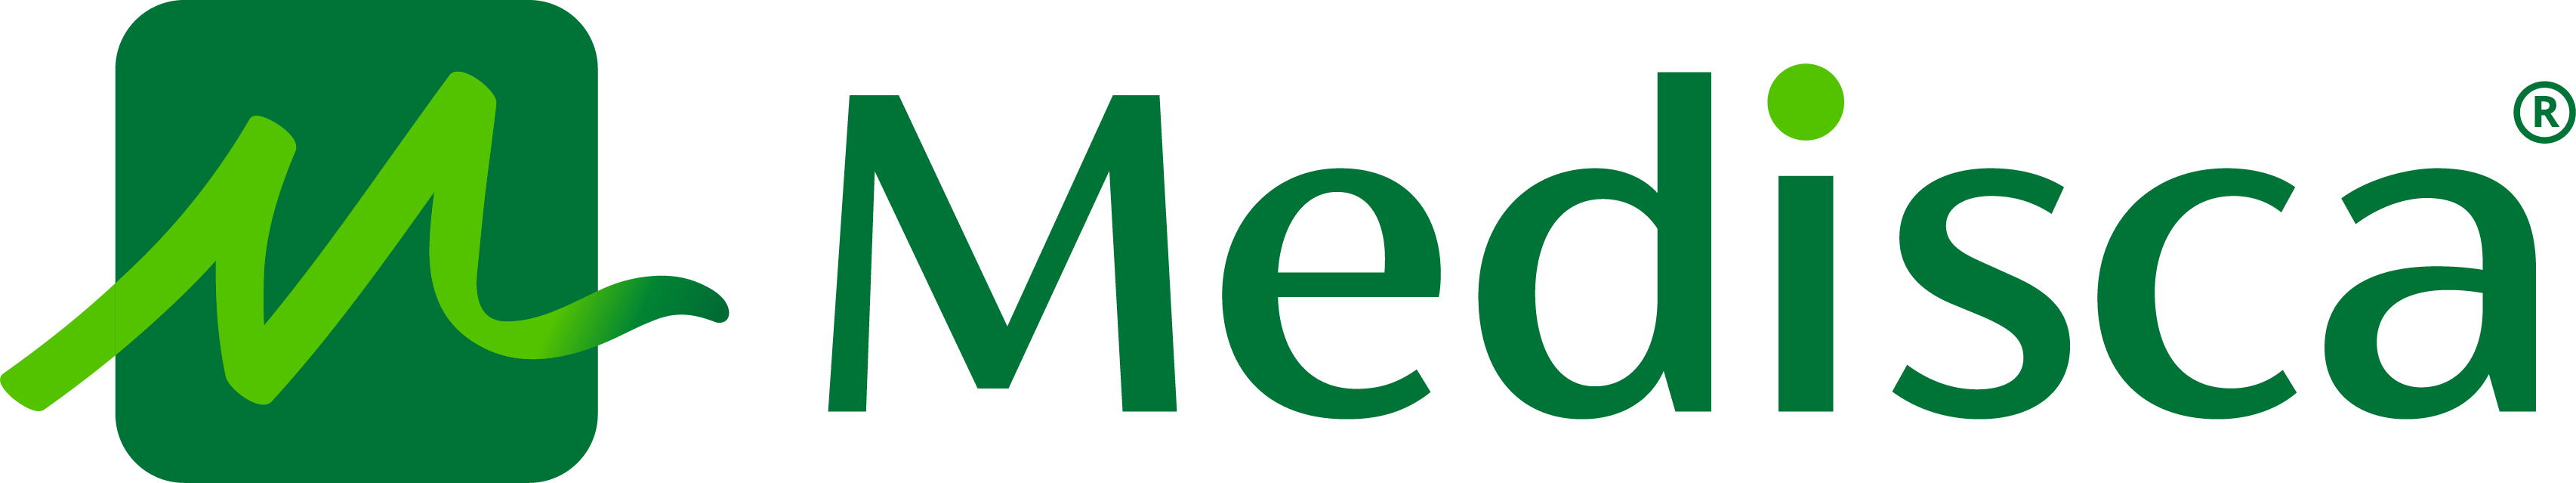 Medisca Logo.png